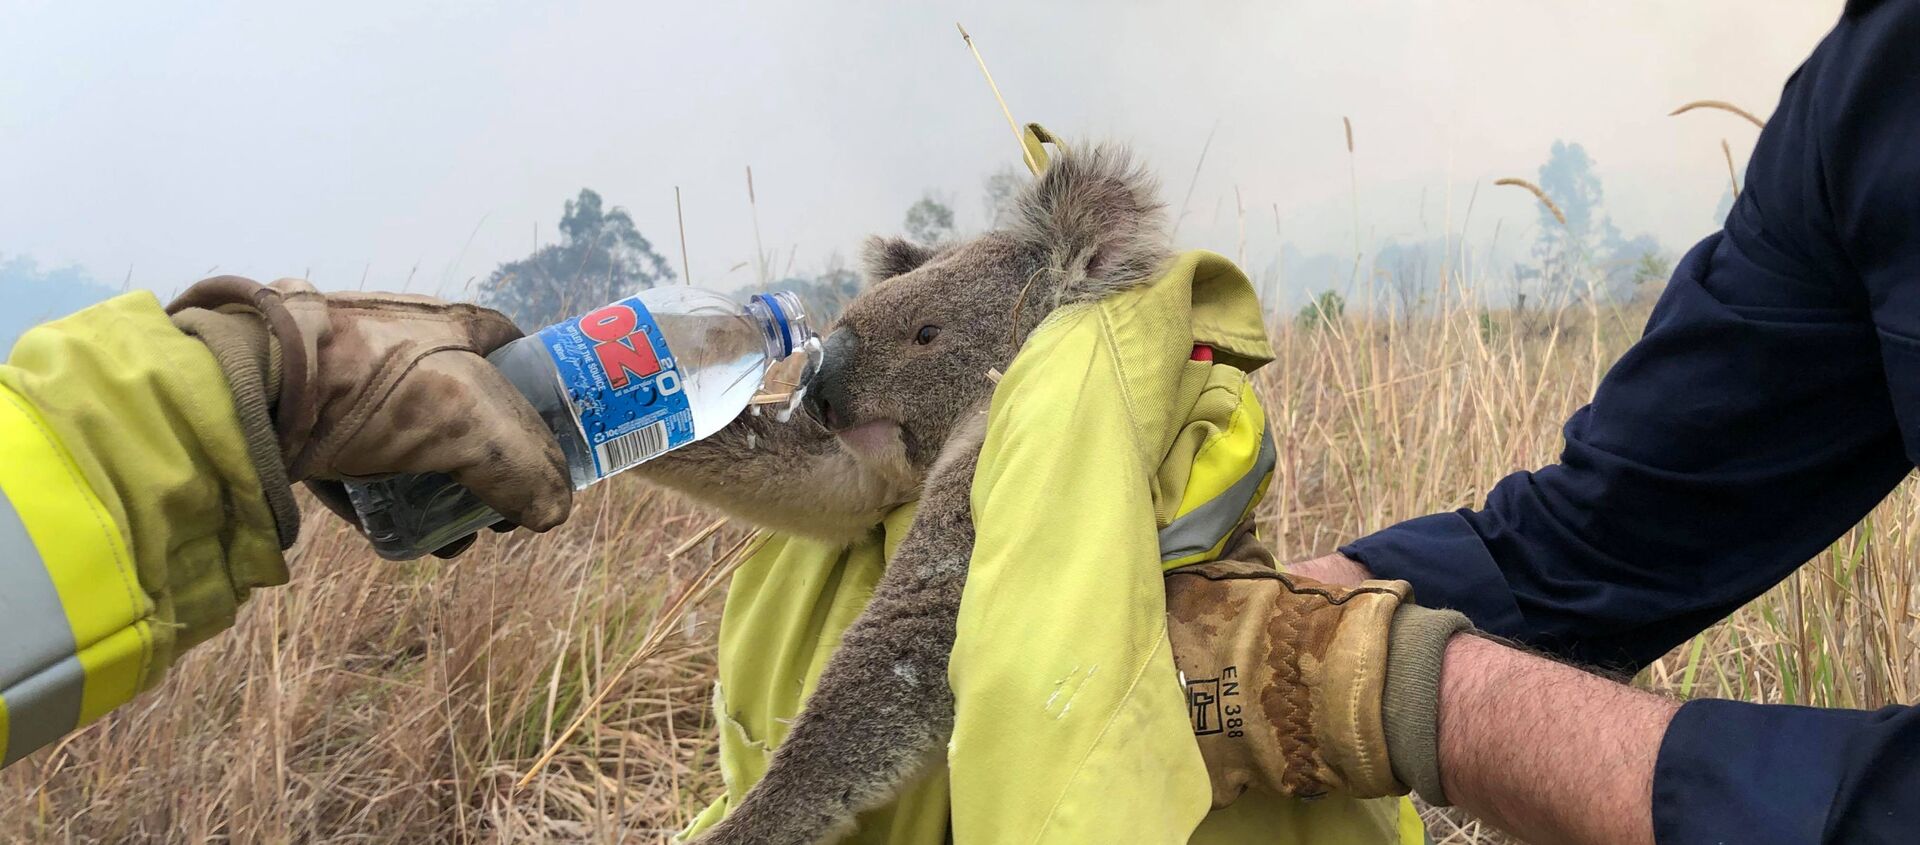 Avustralya'da orman yangınından kurtarılan bir koala - Sputnik Türkiye, 1920, 09.12.2019